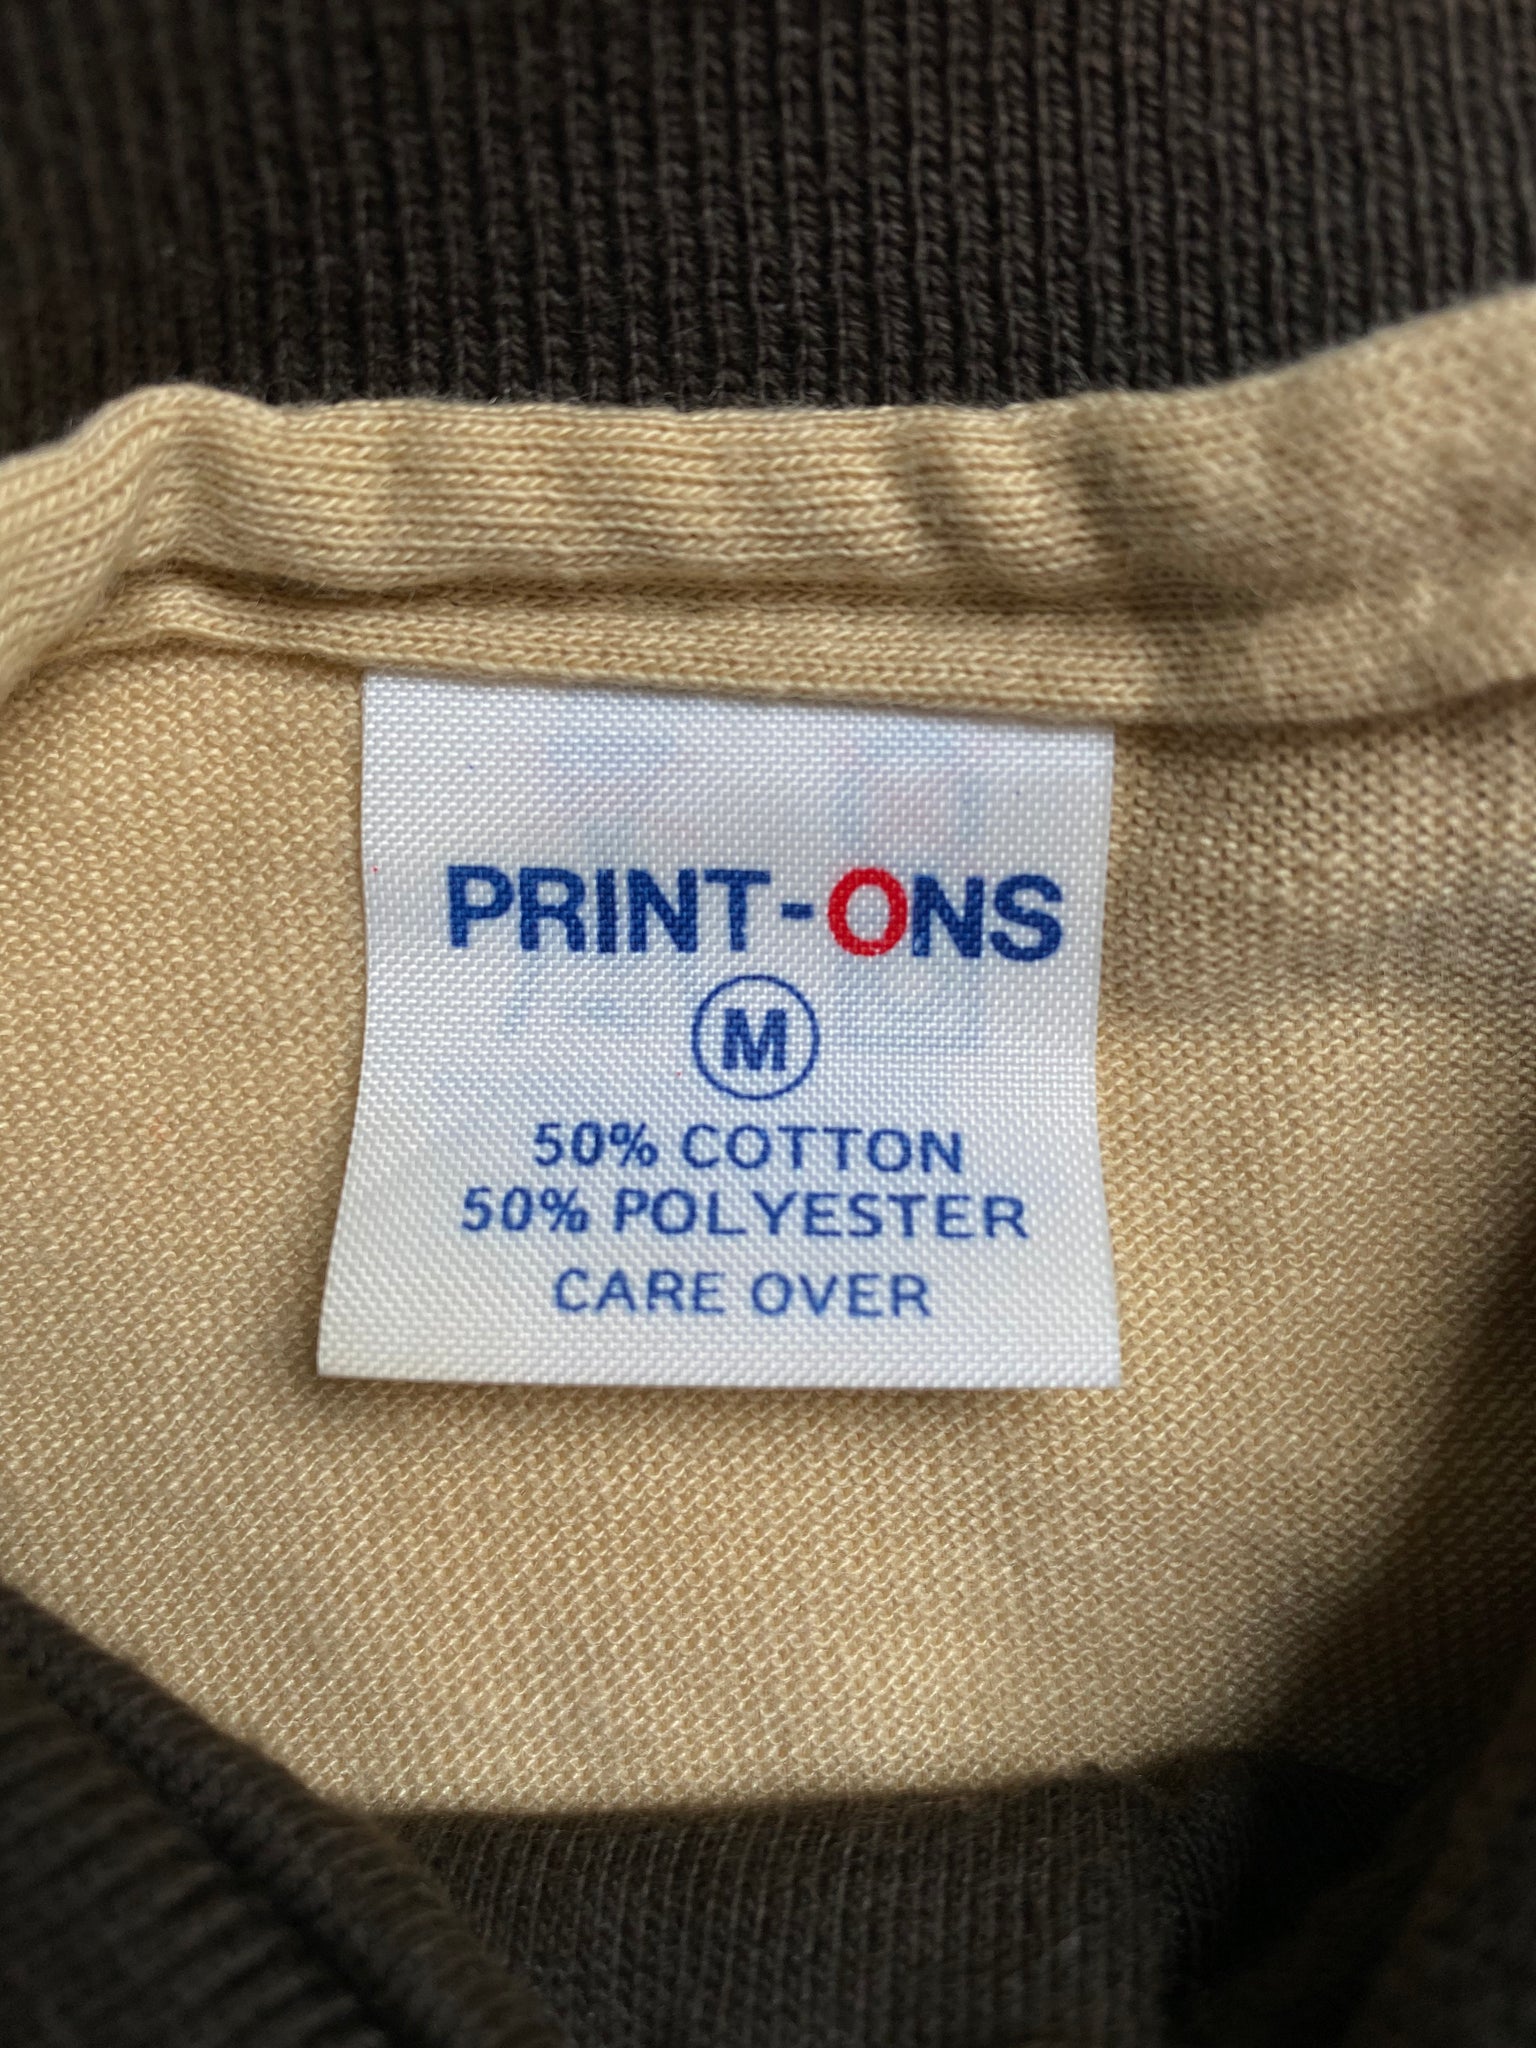 70’s PORSCHE Size M Vintage Polo-shirts / Y590